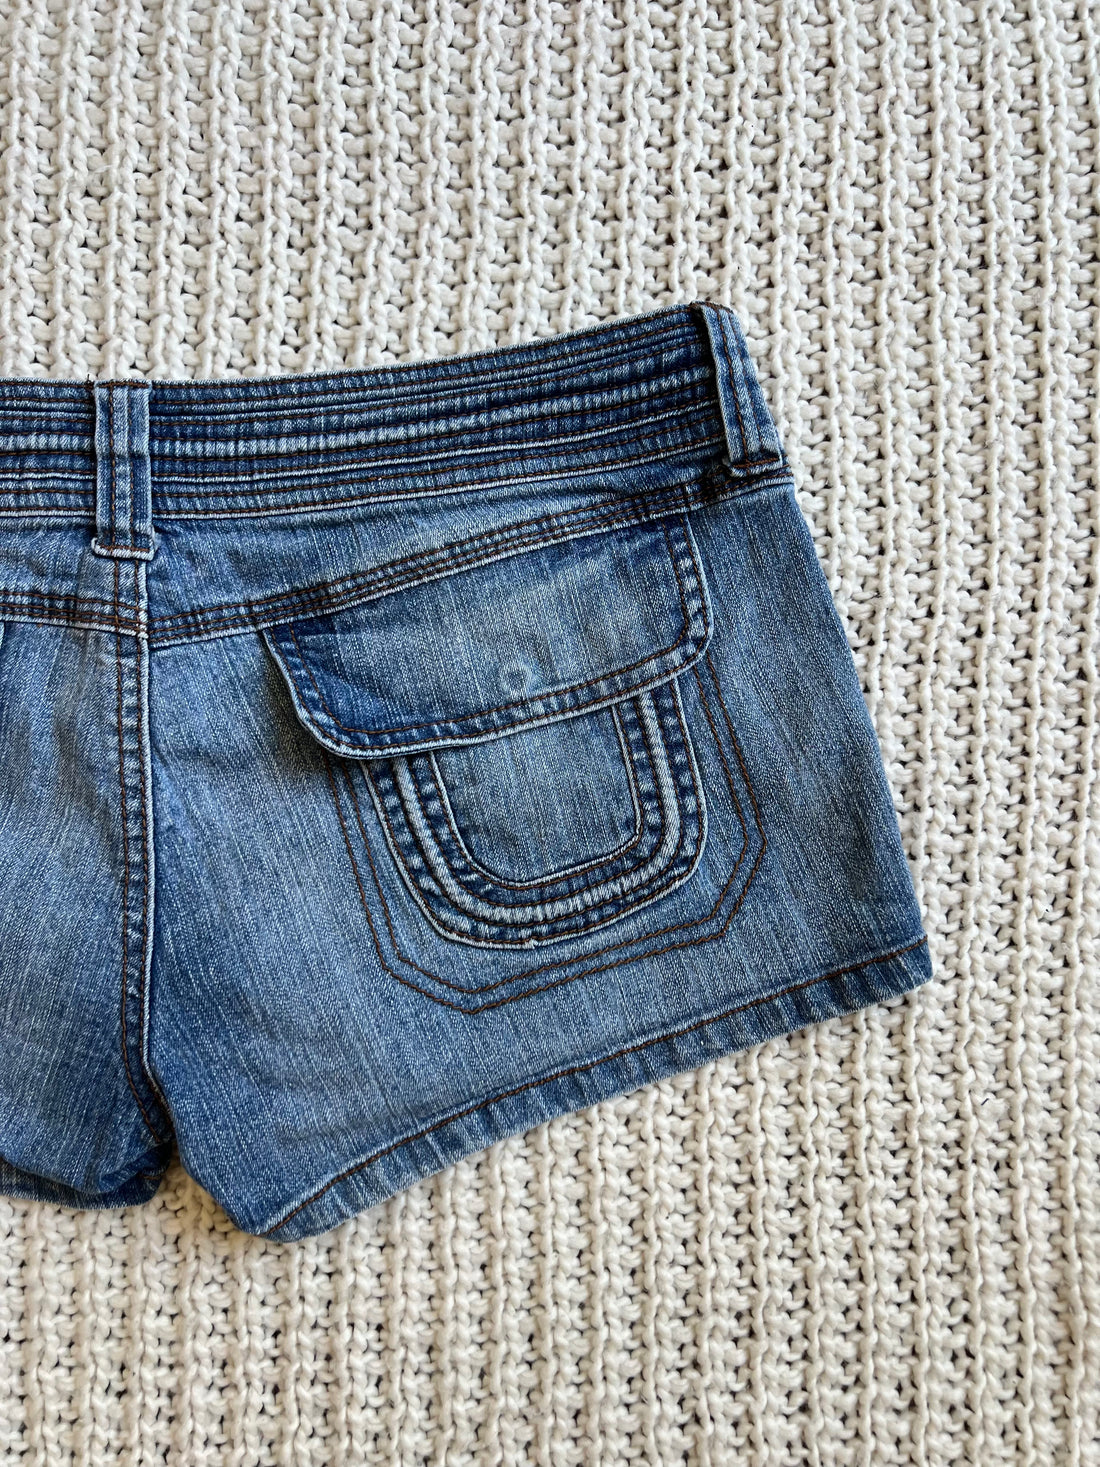 Ultra Low Waist Mini Shorts (5)